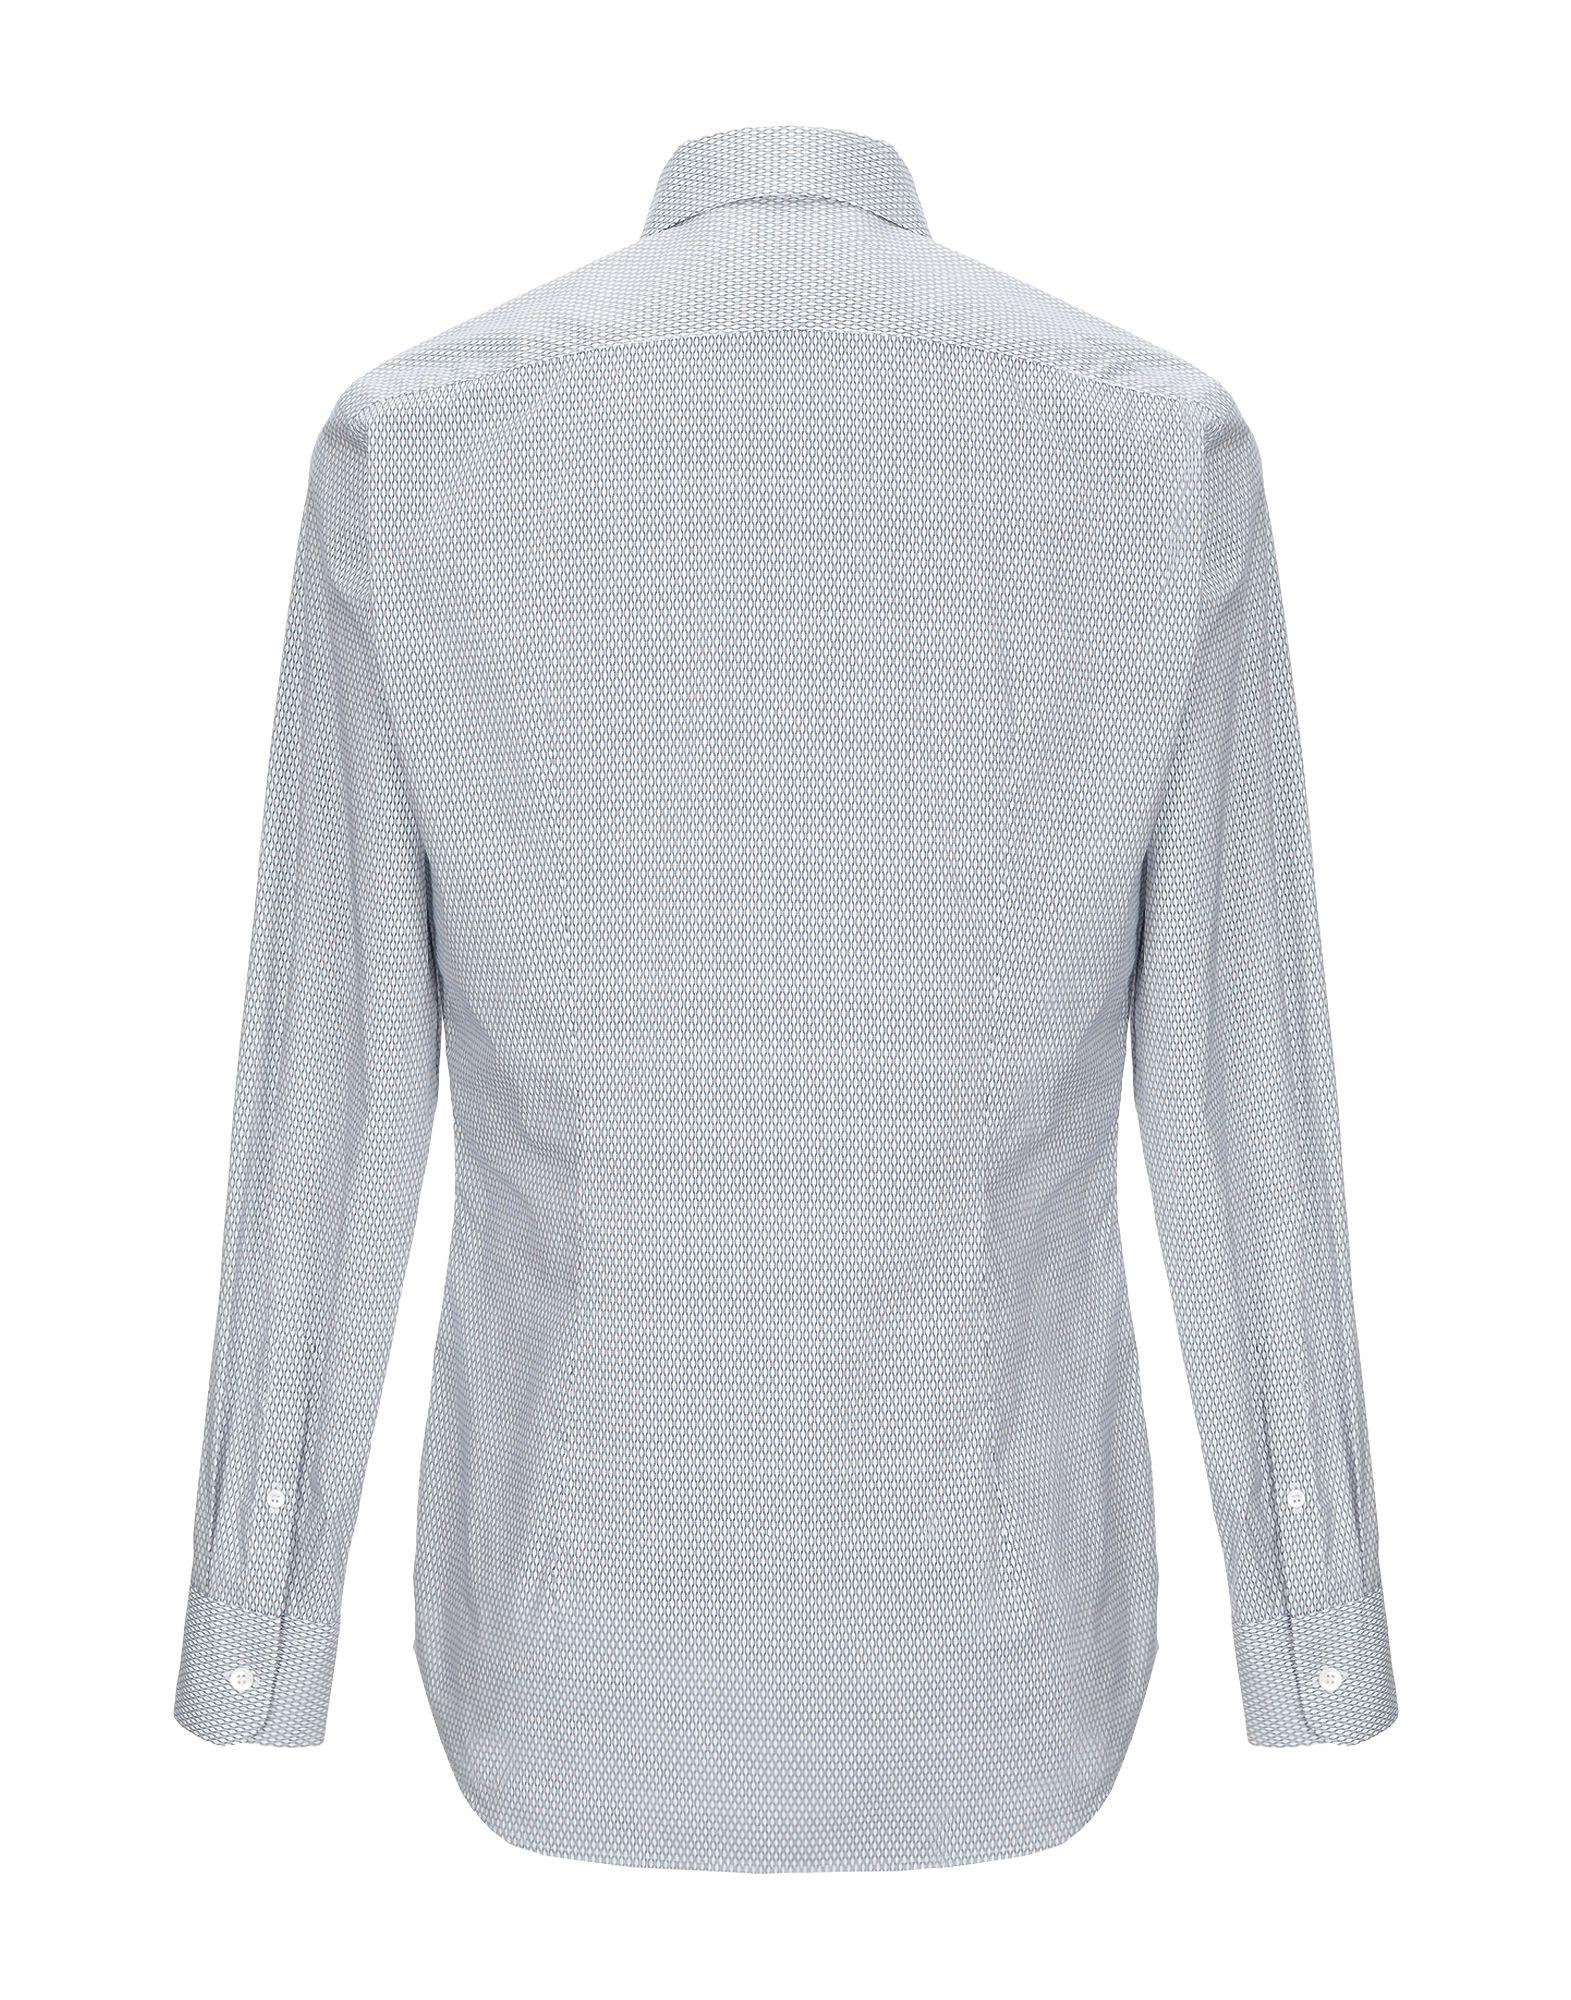 Prada Shirt in White for Men - Lyst